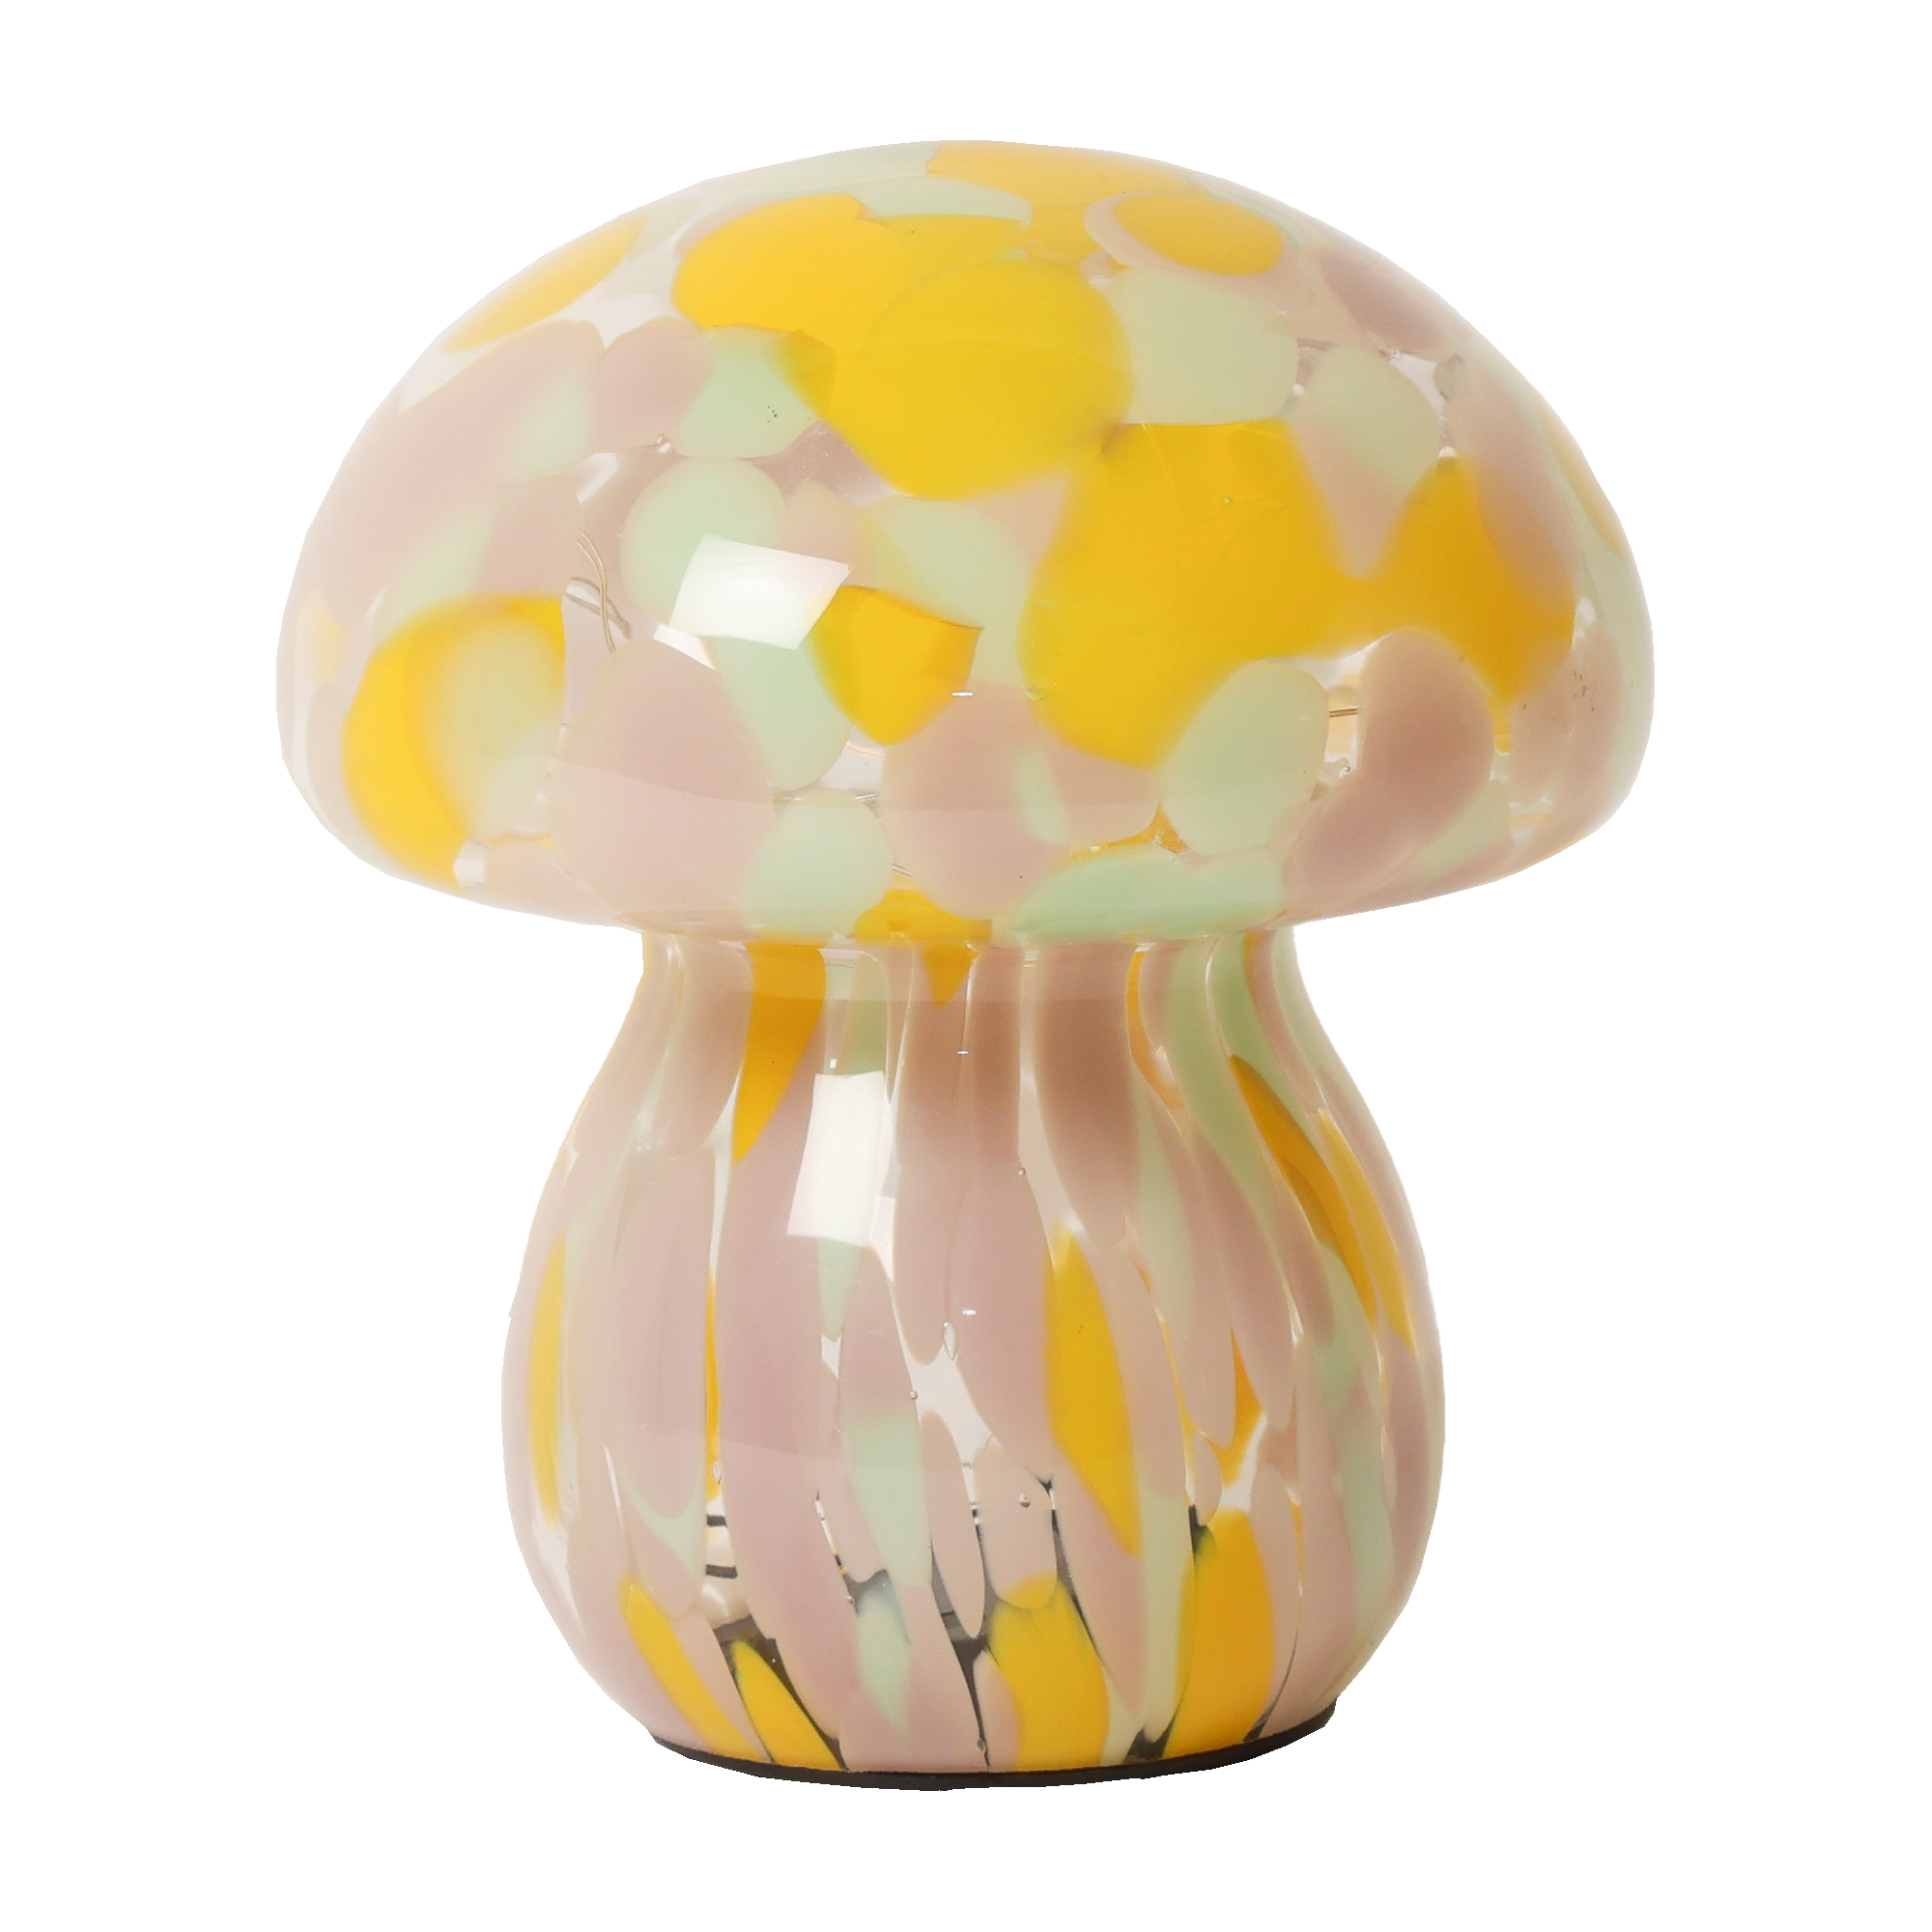 Billede af Mushroom lampe i glas, gul/rosa/mint hos Naga.dk